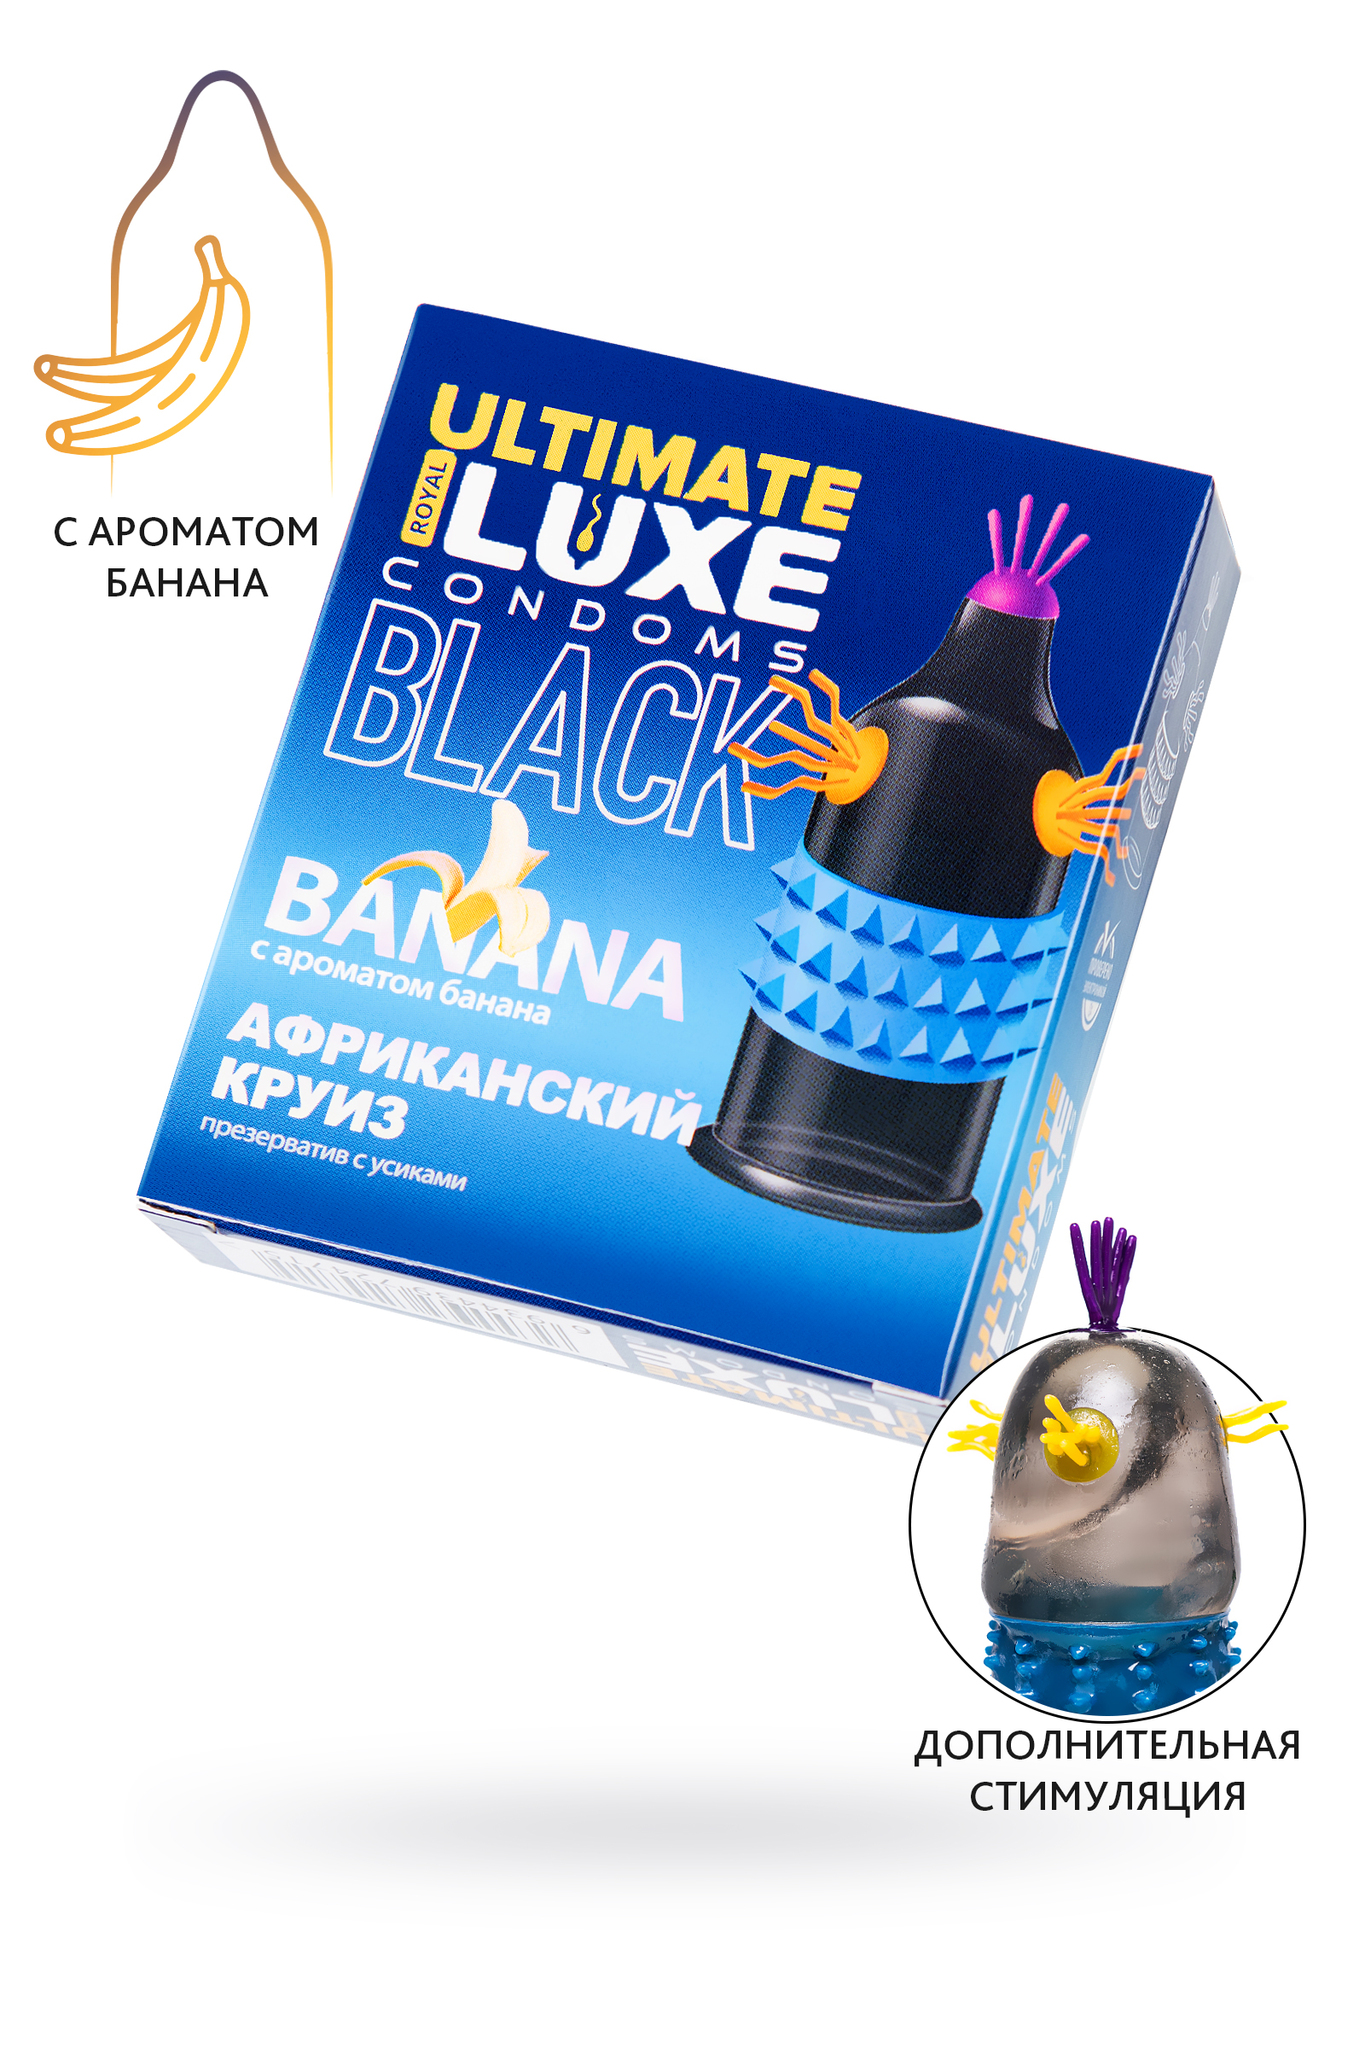 Презервативы Luxe BLACK ULTIMATE Африканский Круиз (Банан) фото